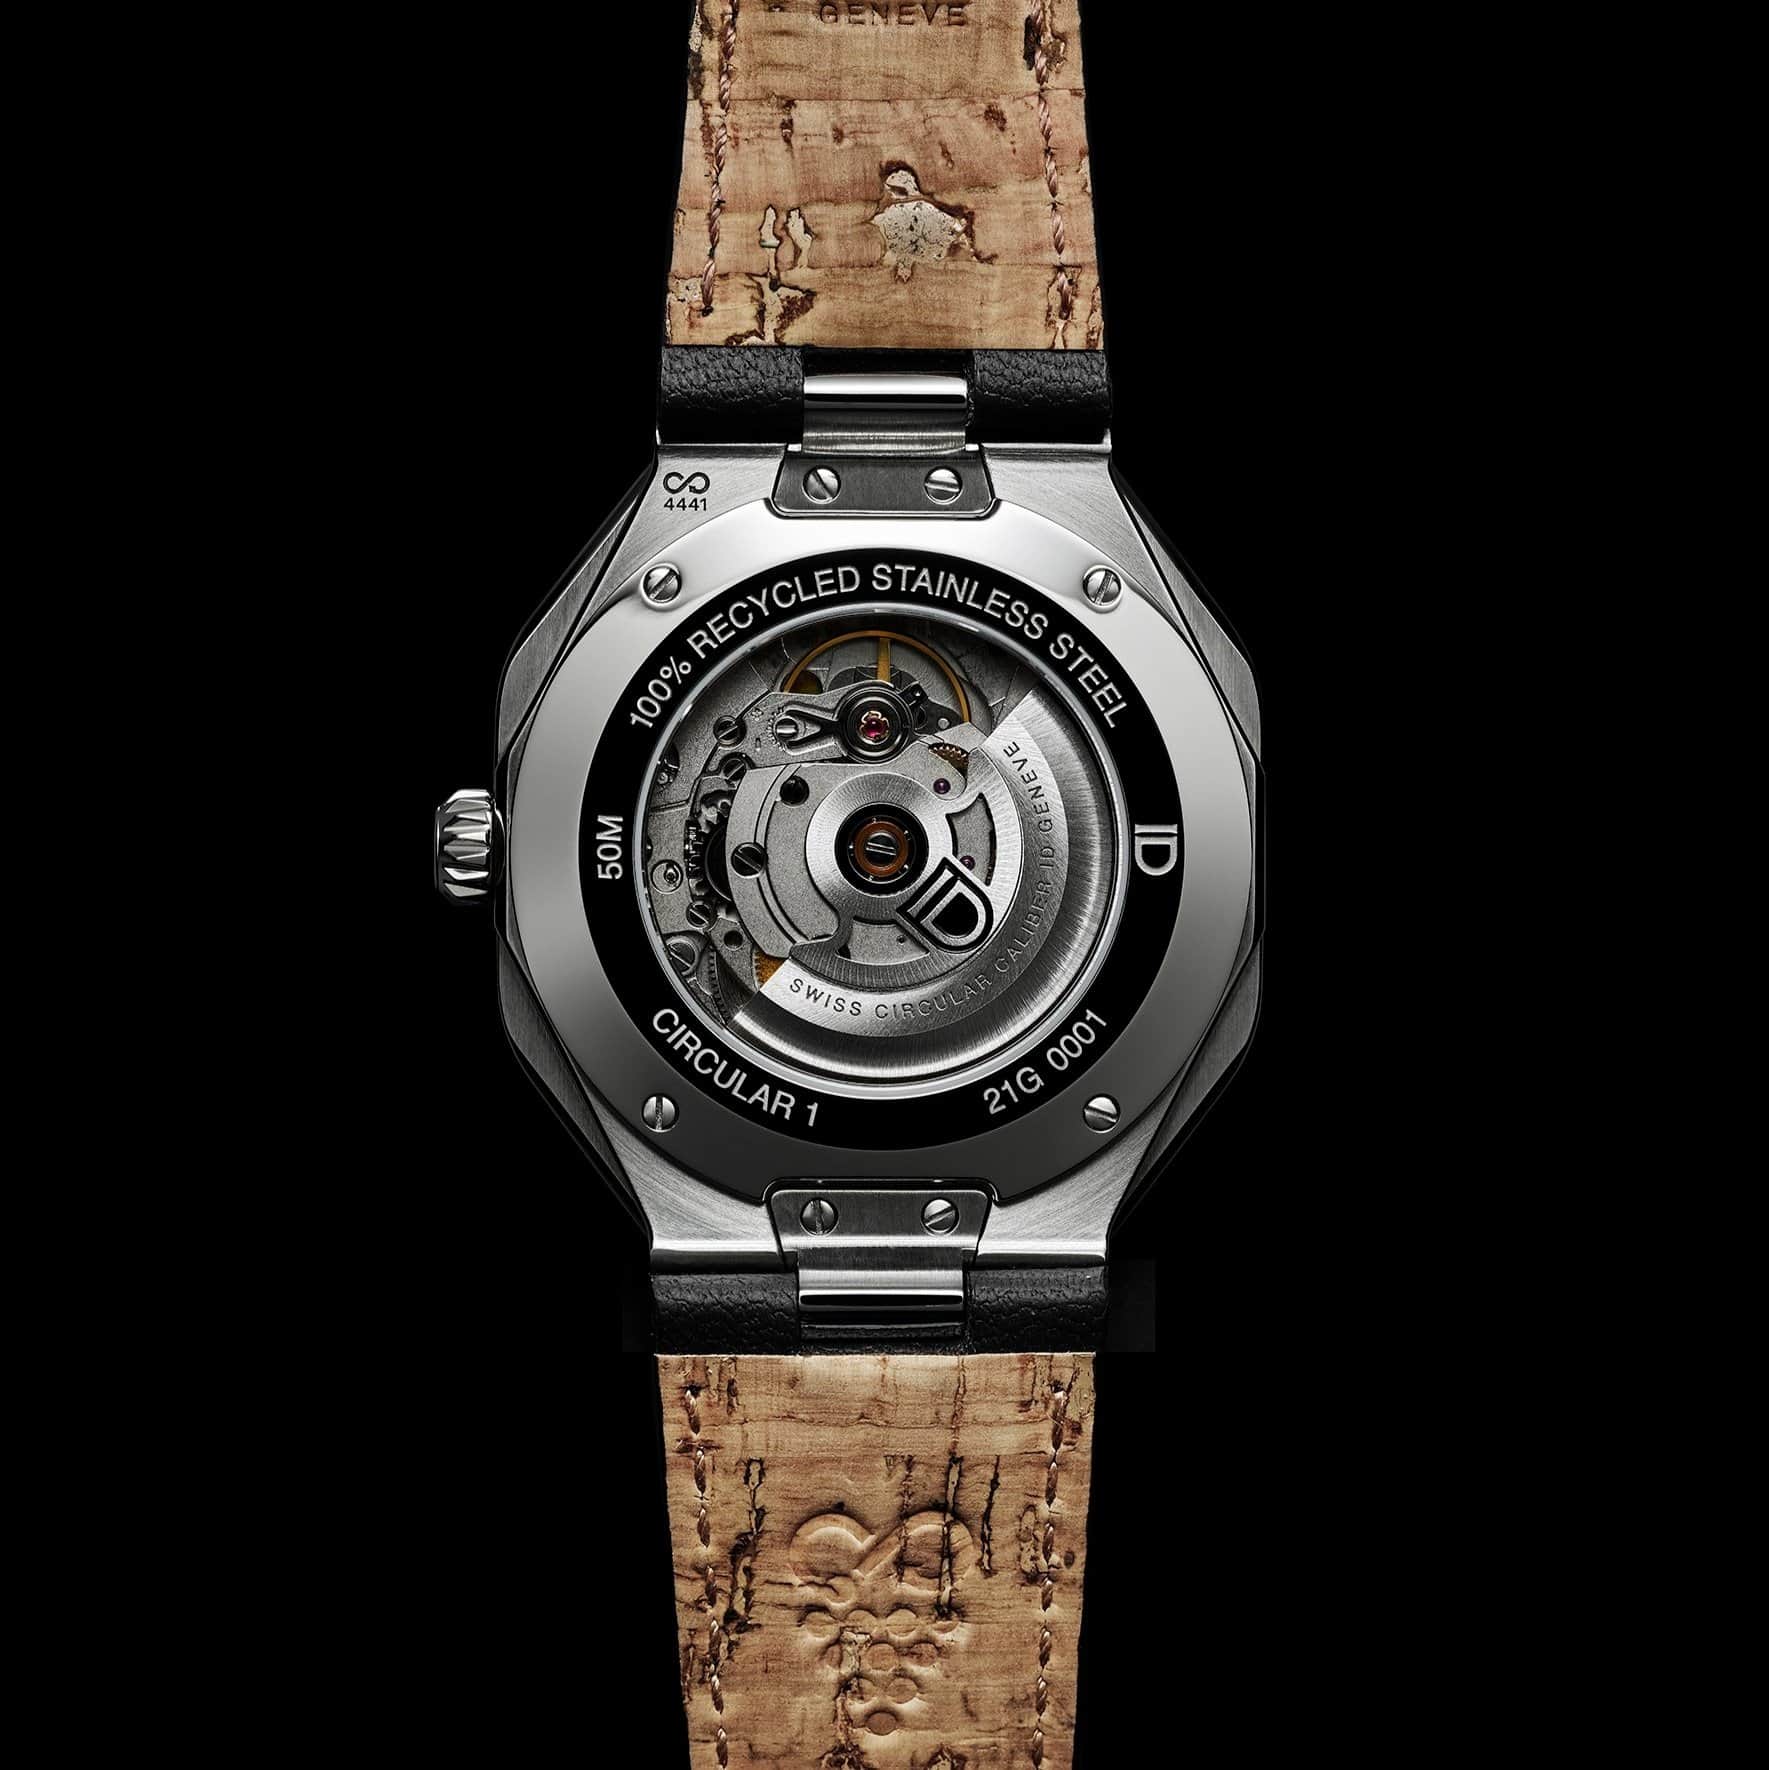 Công ty khởi nghiệp ID Genève Watches gần đây đã ra mắt chiếc đồng hồ đầu tiên được làm từ thép tái chế 100% của Thụy Sỹ.